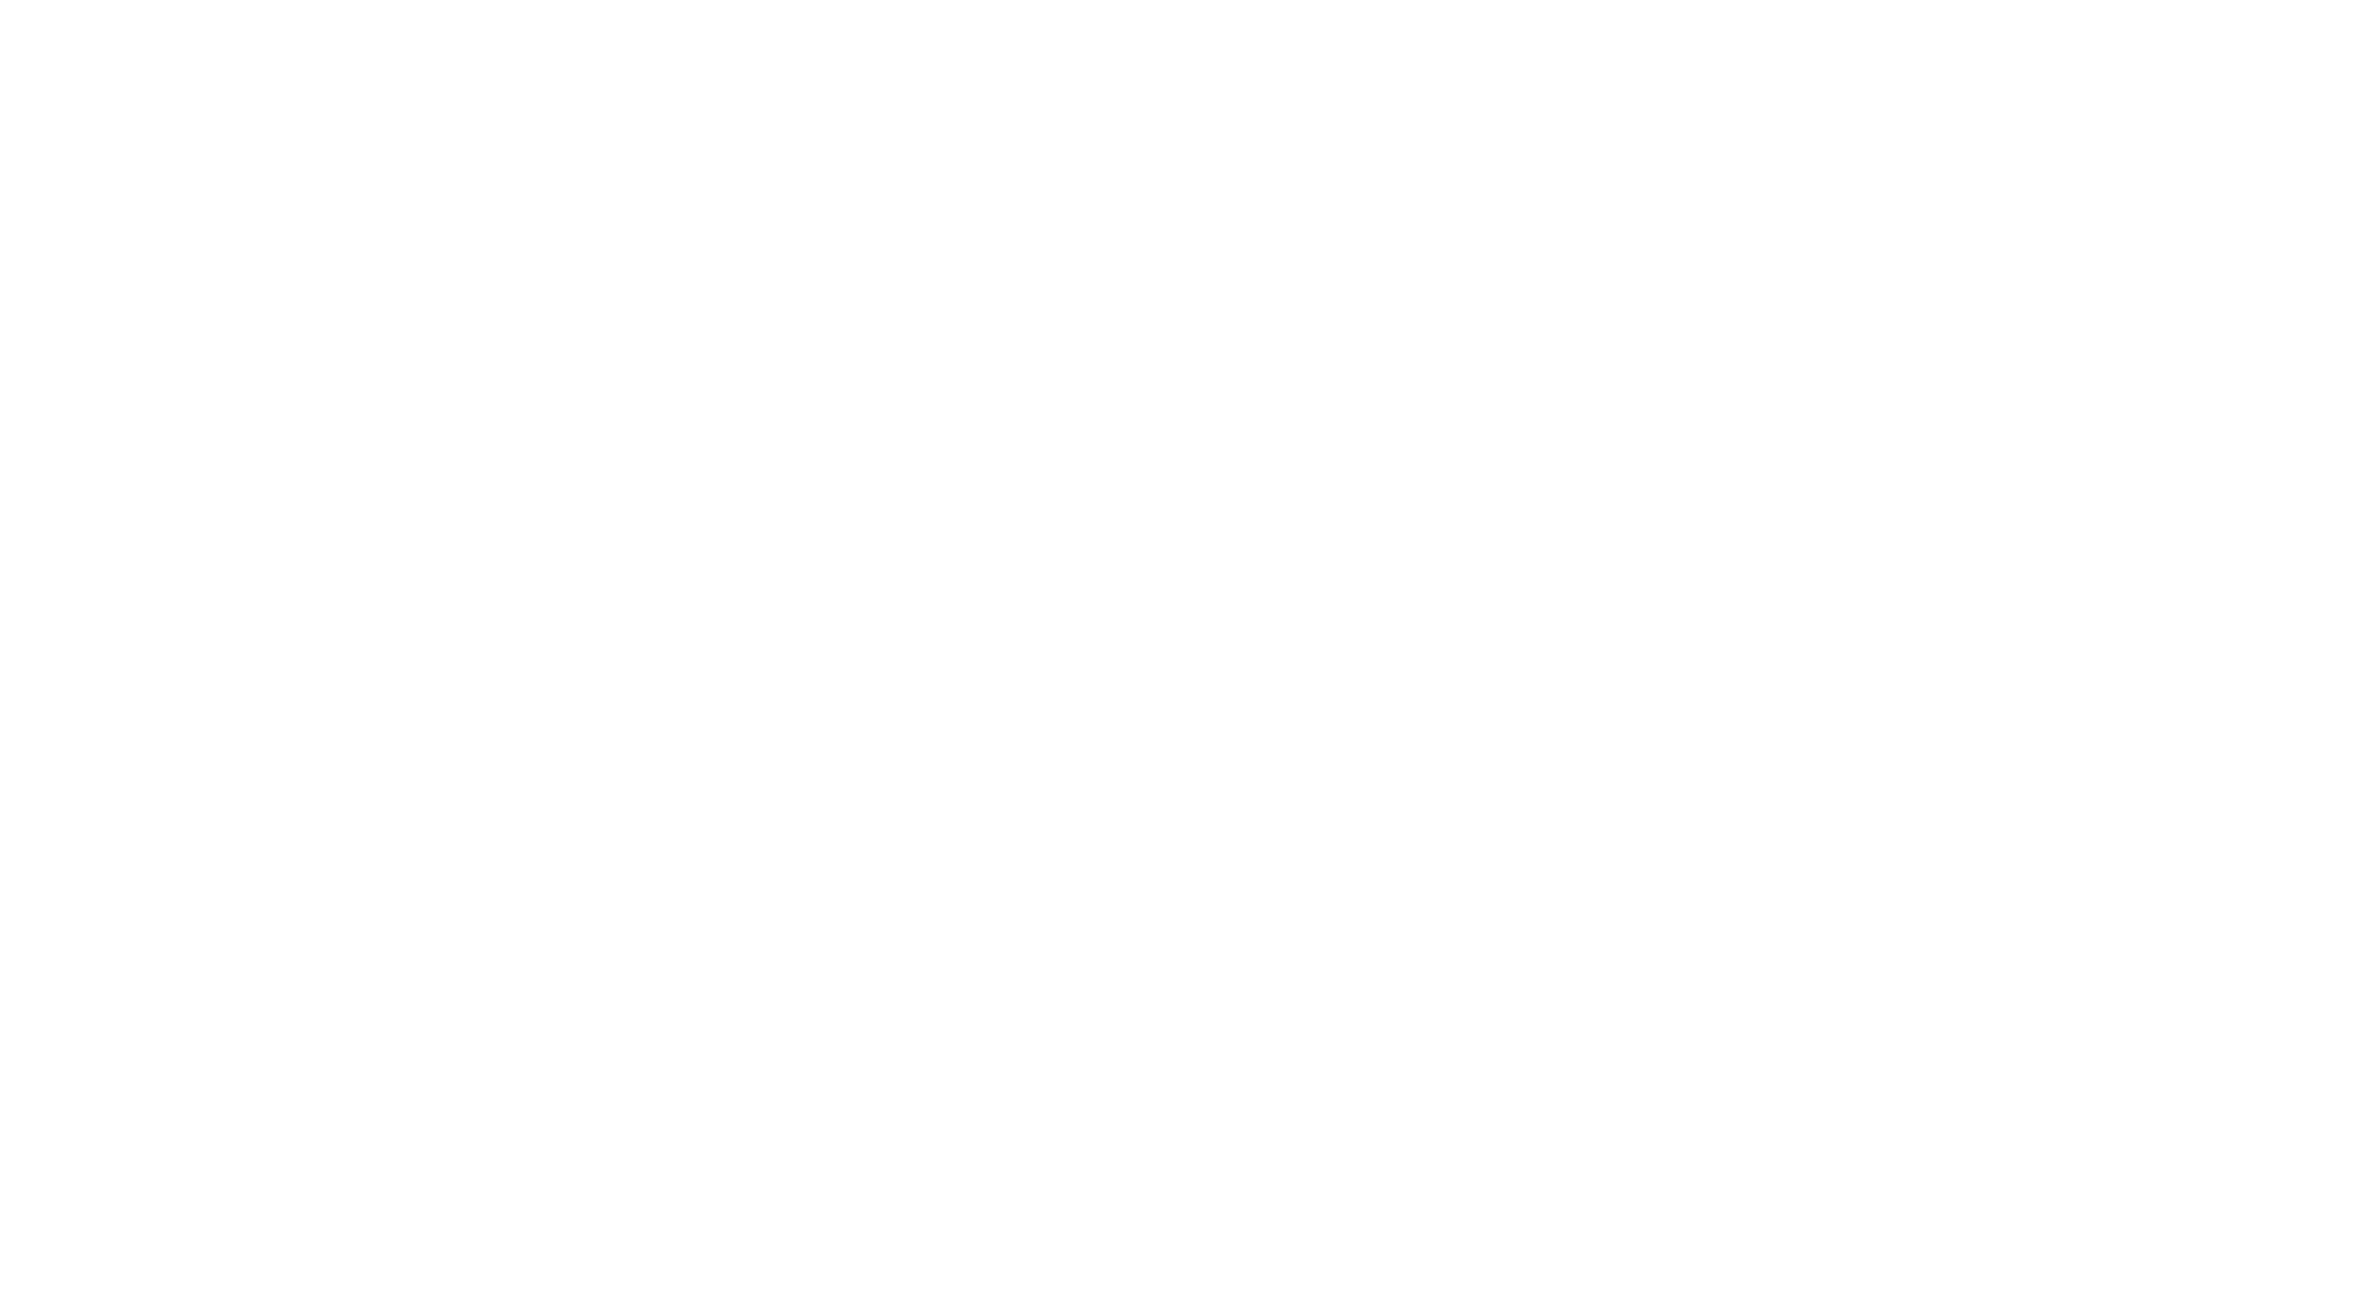 Logo Clos de L'Oratoire Des Papes